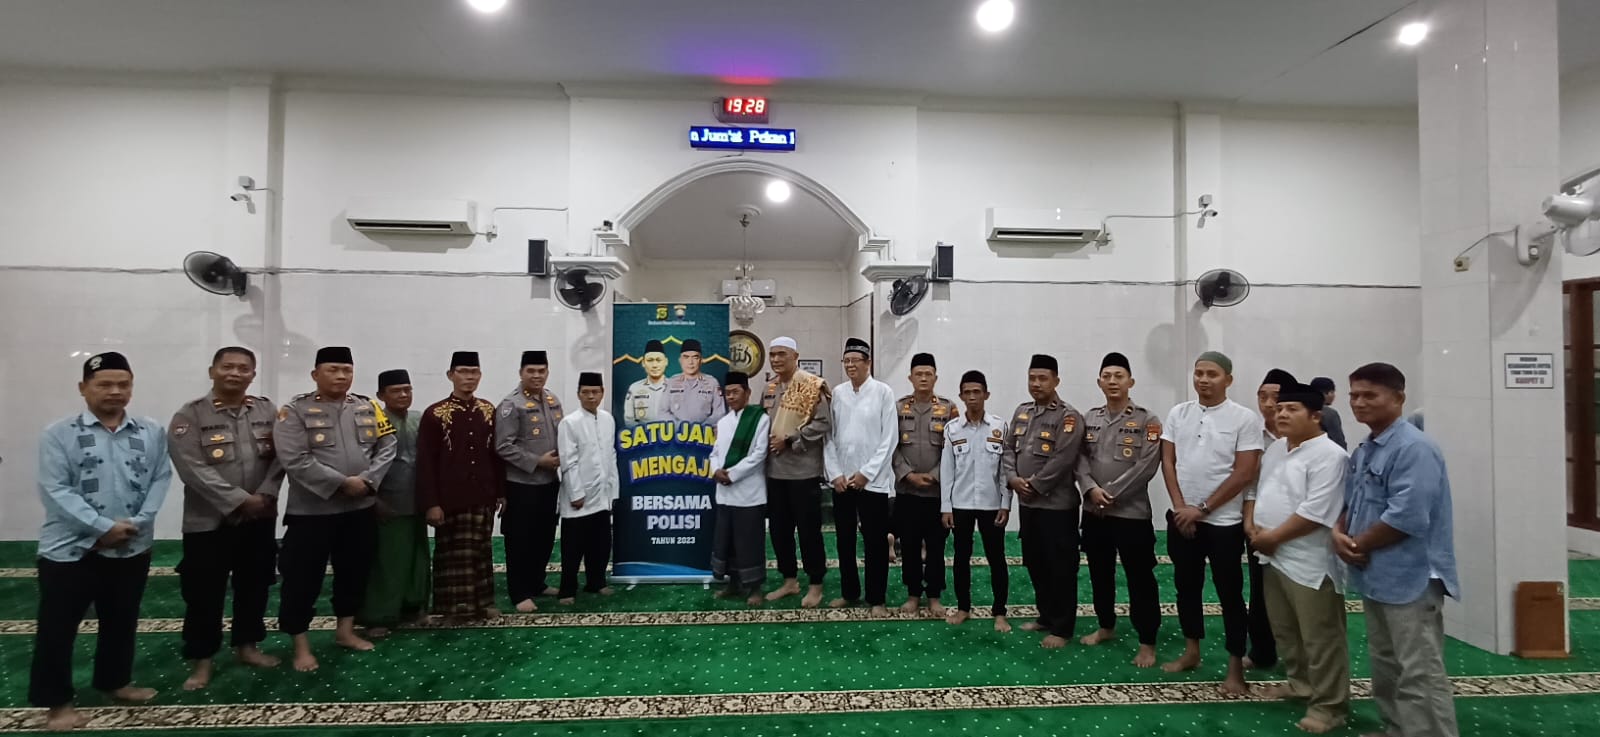 Ditbinmas PMJ Laksanakan Program "Satu Jam Mengaji Bersama Polisi" di Masjid Al Jihad